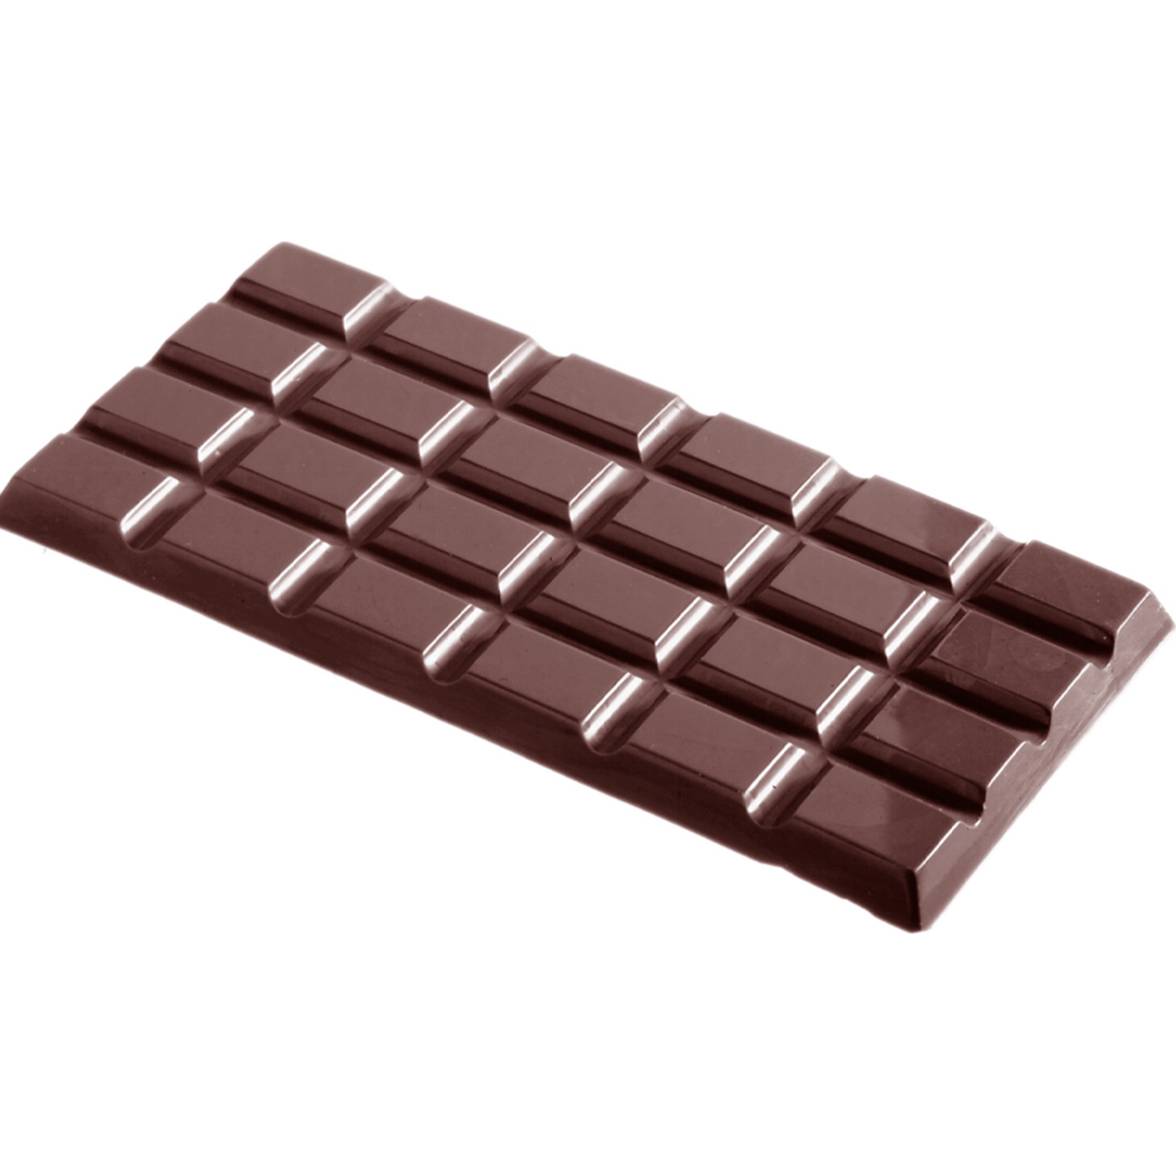 Forma na čokoládu 100g CHOCOLATE WORLD